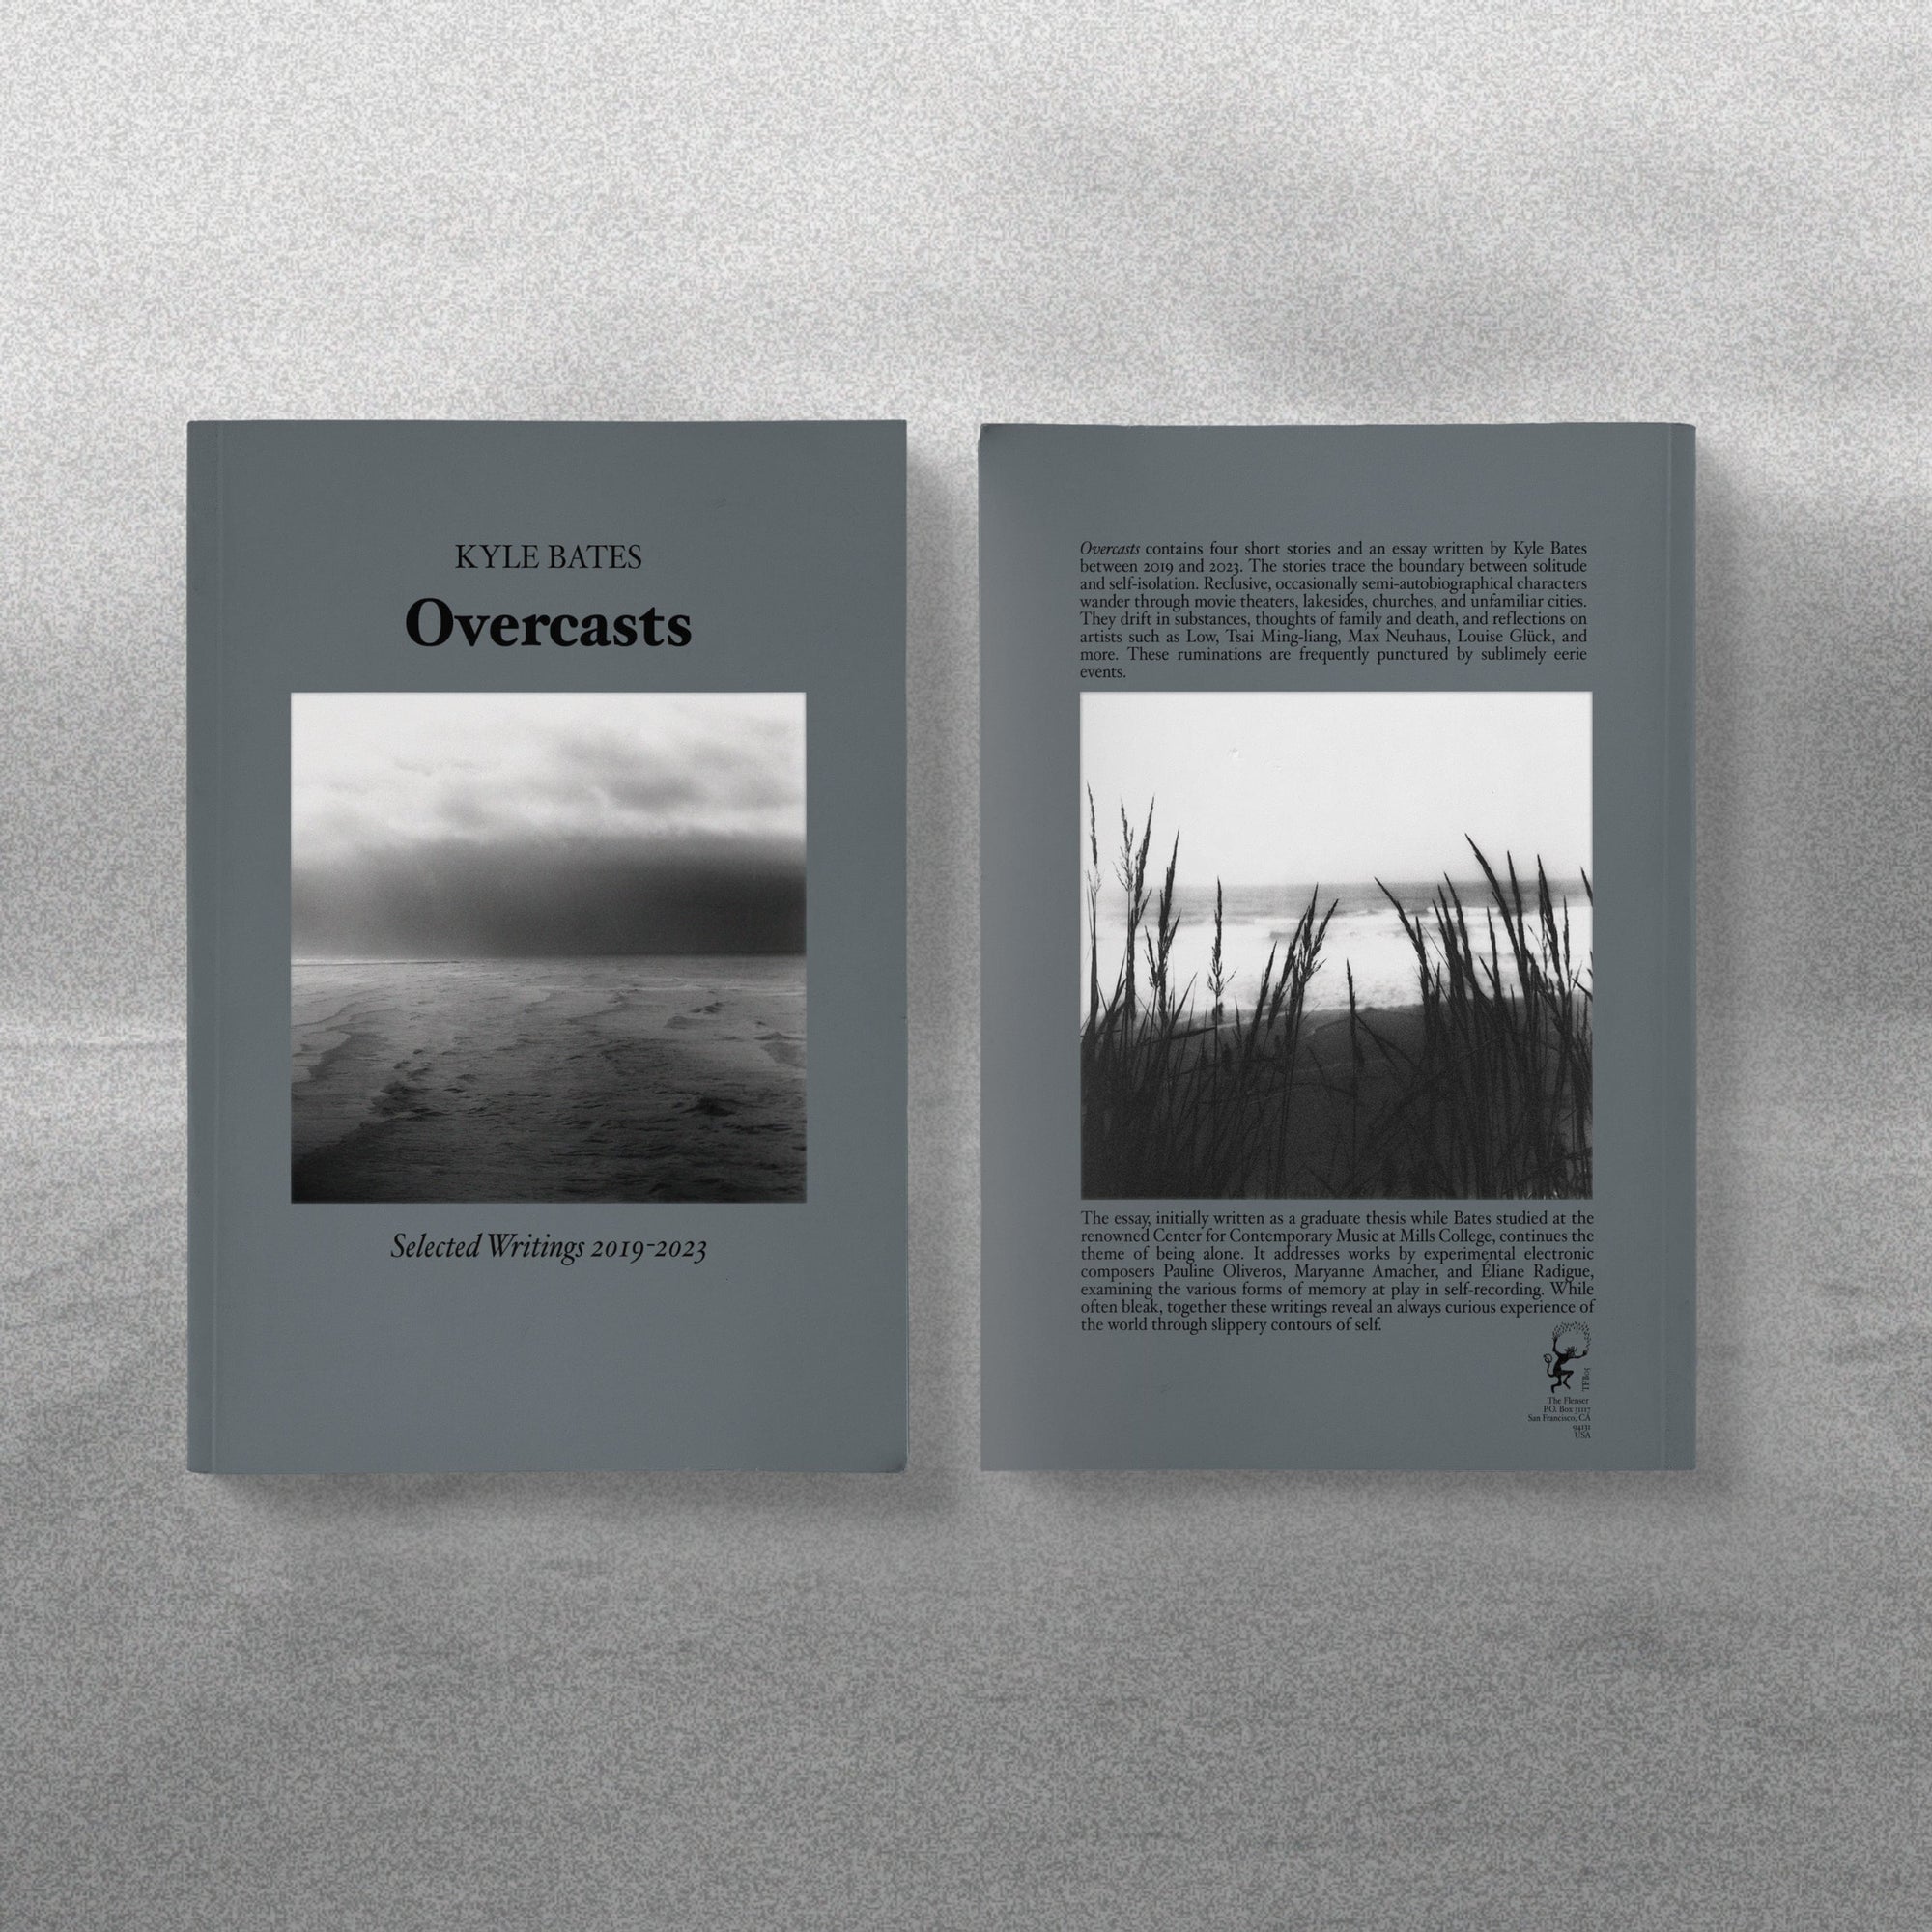 The Flenser Book Kyle Bates "Overcasts" Paperback